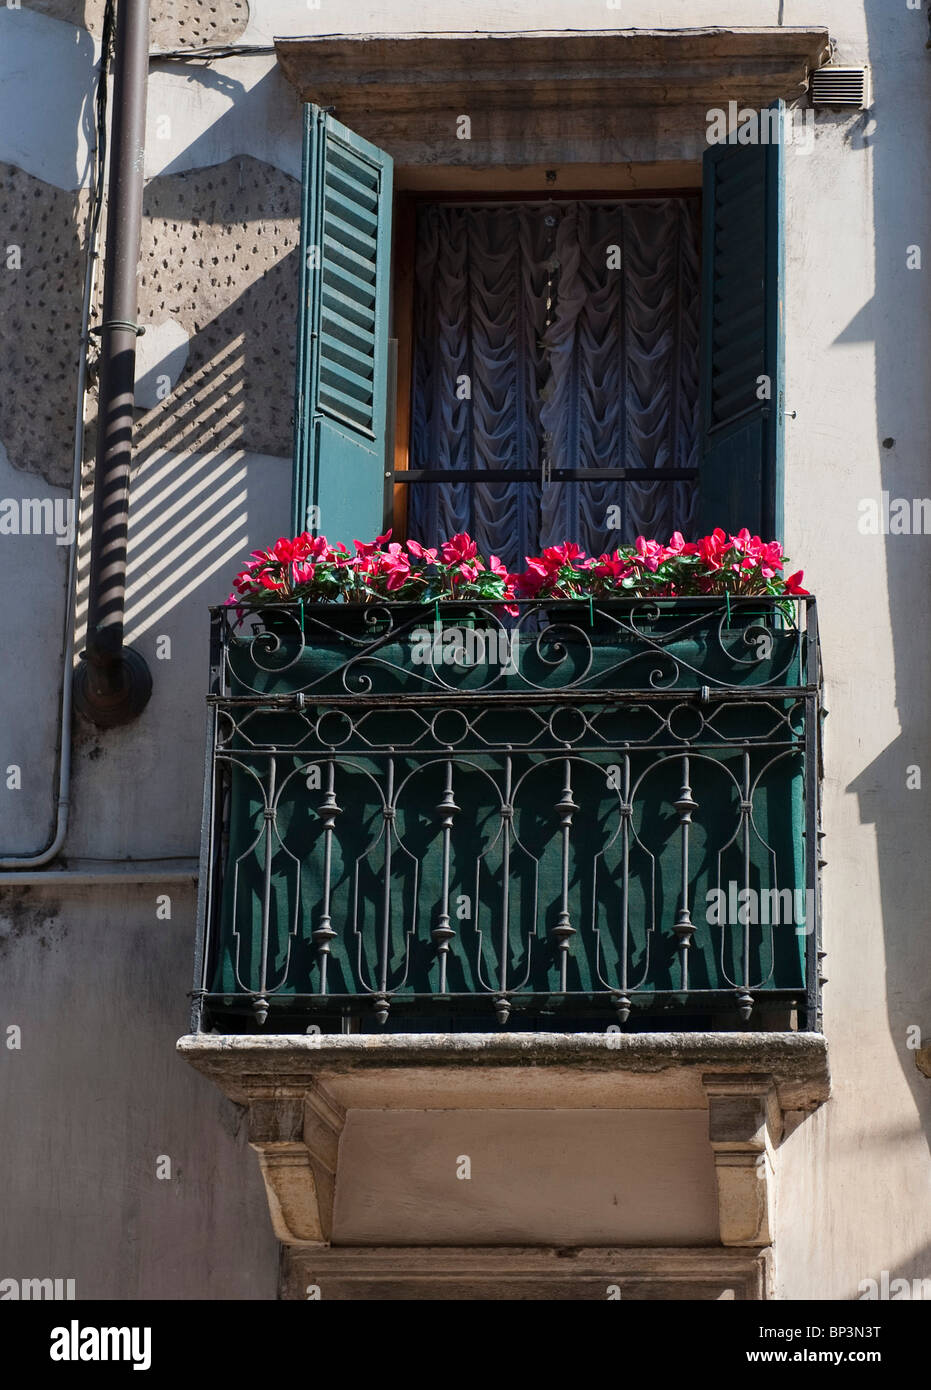 Balcon avec les fleurs rouges Banque D'Images